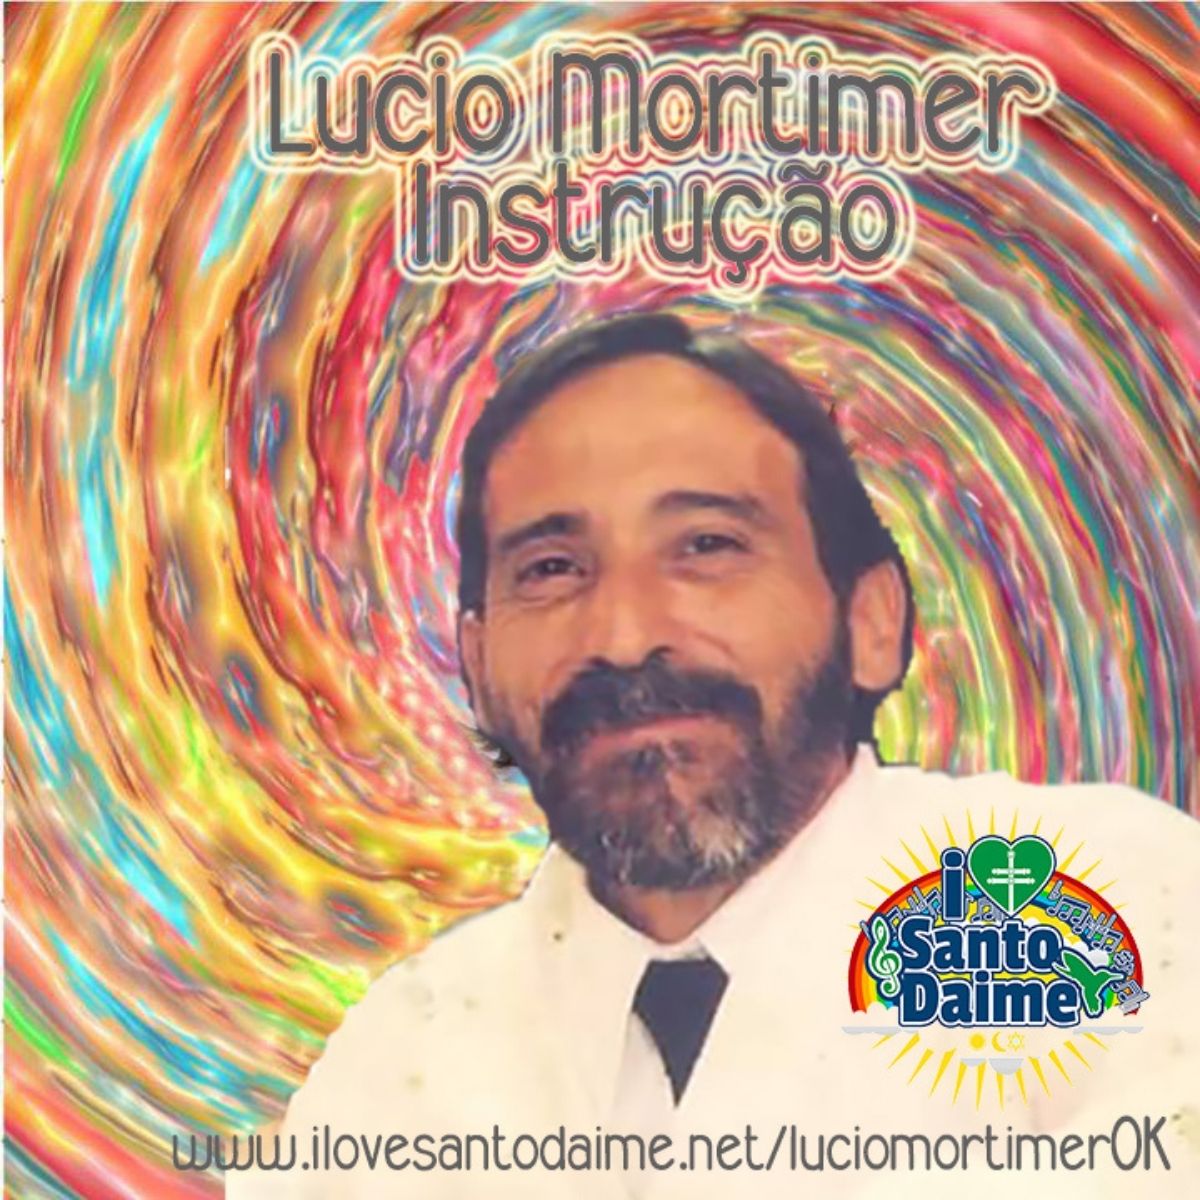 Instrução – Lucio Mortimer Baixar MP3 PDF caderno para imprimir + cifras listen Céu do Mapiá